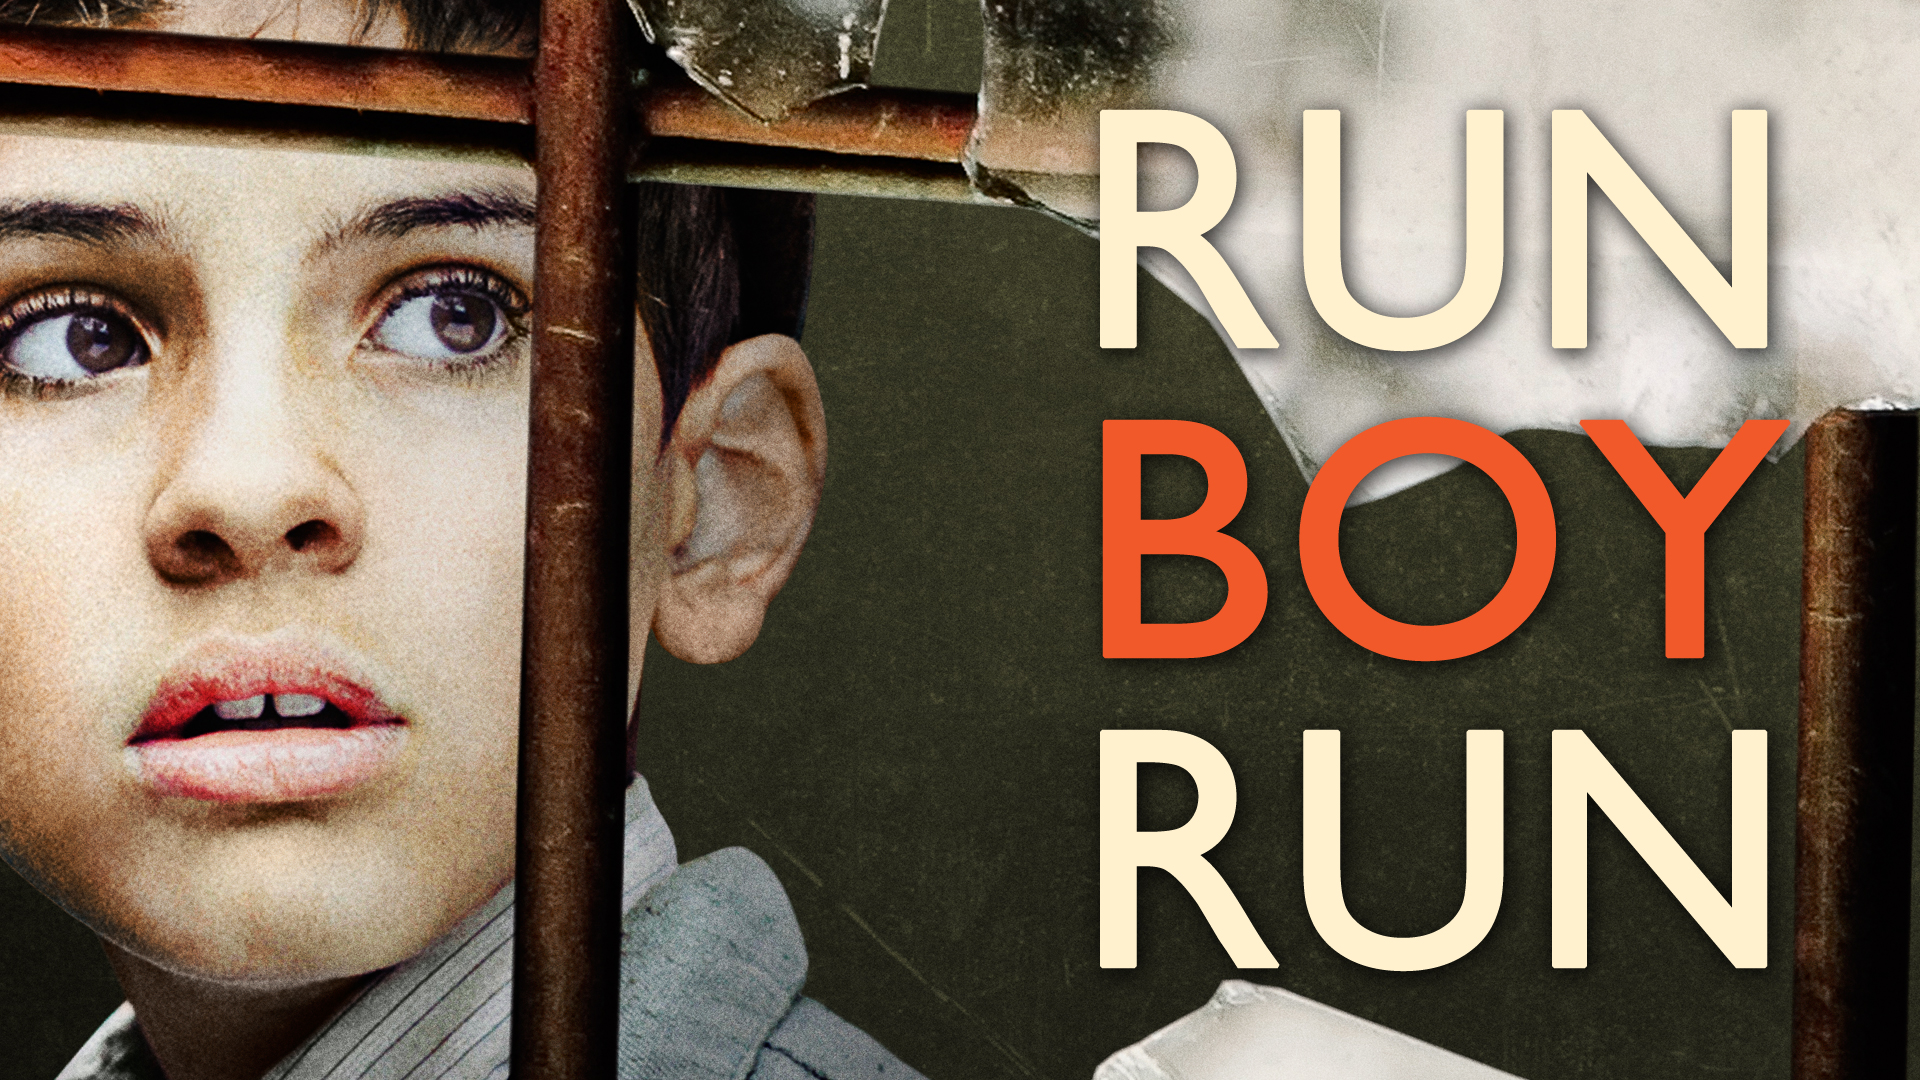 run boy run meaning